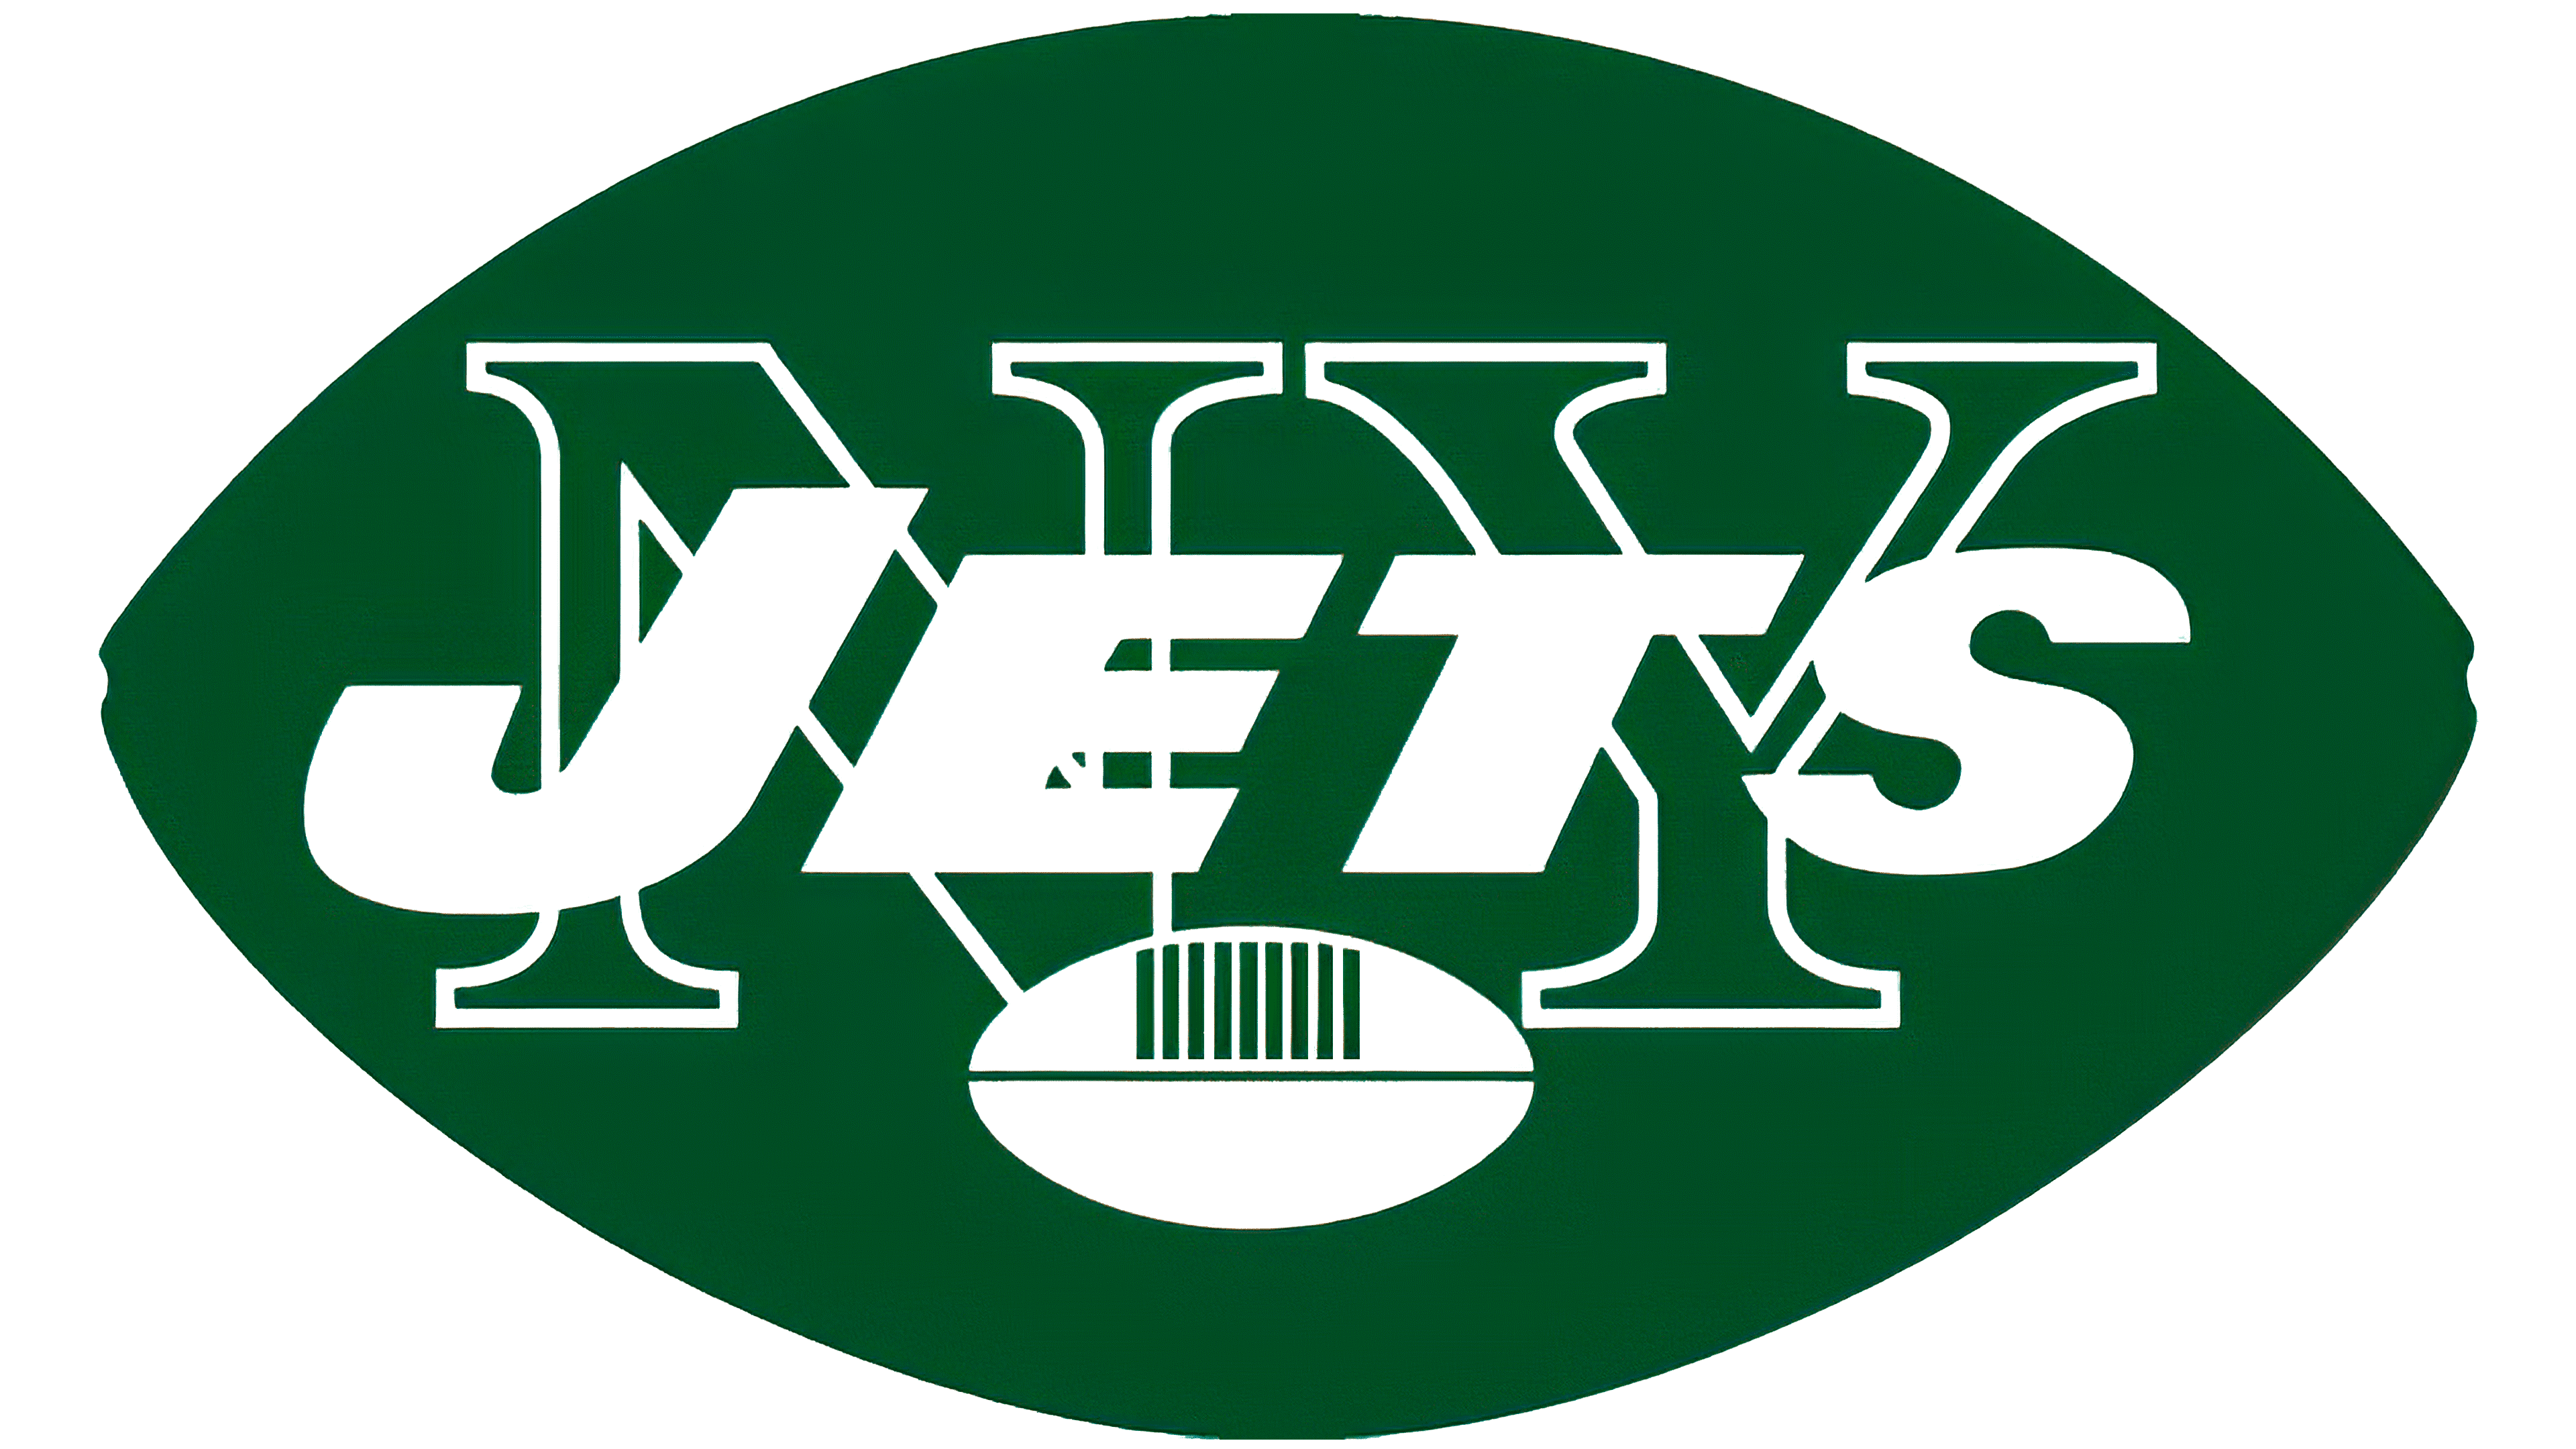 Jets Logo PNG Images